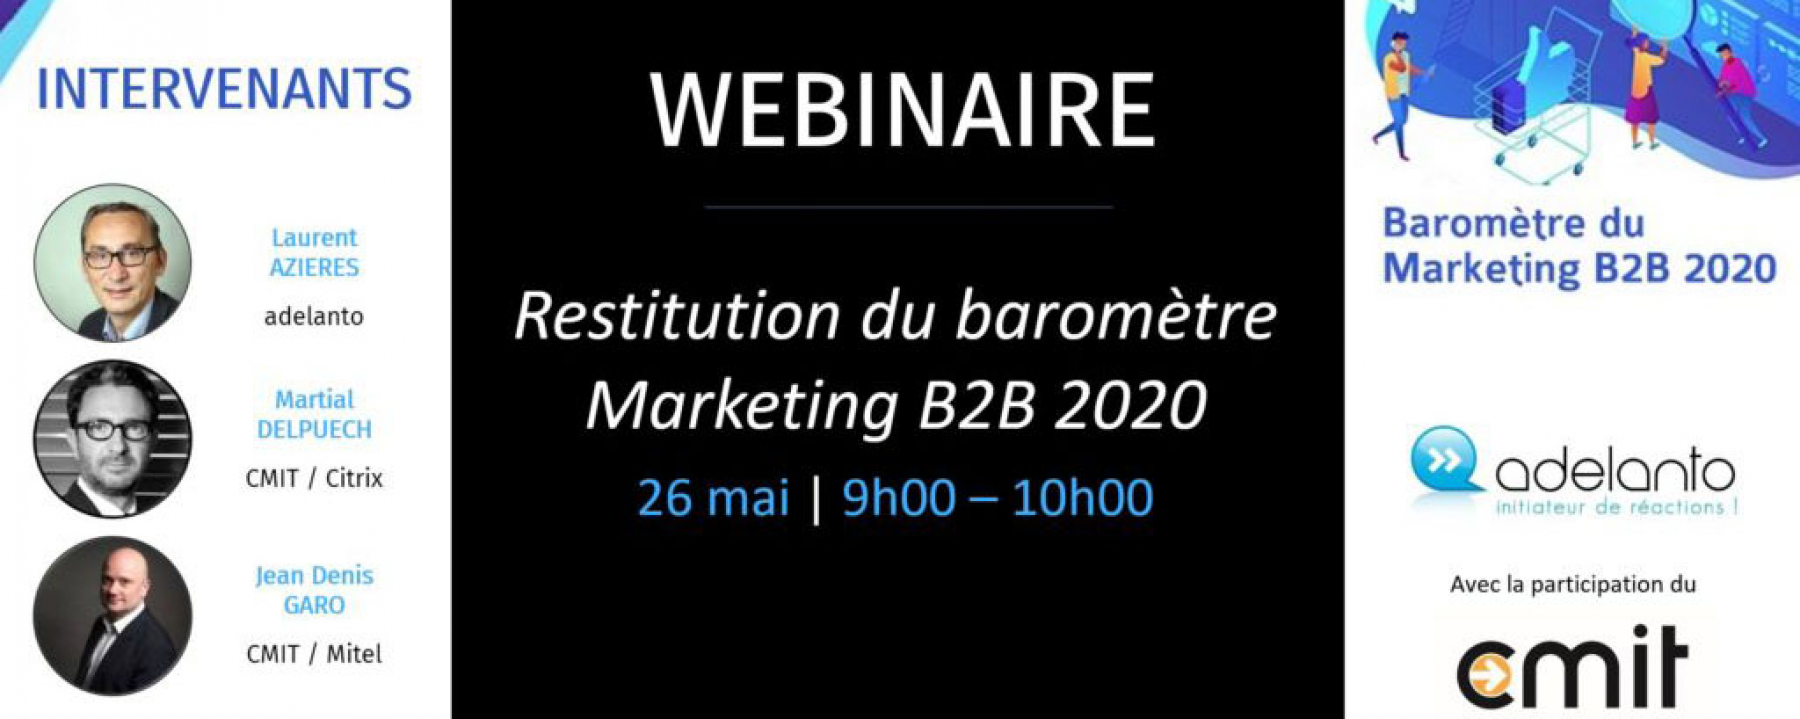 Webinar Restitution du baromètre marketing B2B 2020, le 26 mai 2020, organisé par le CMIT 